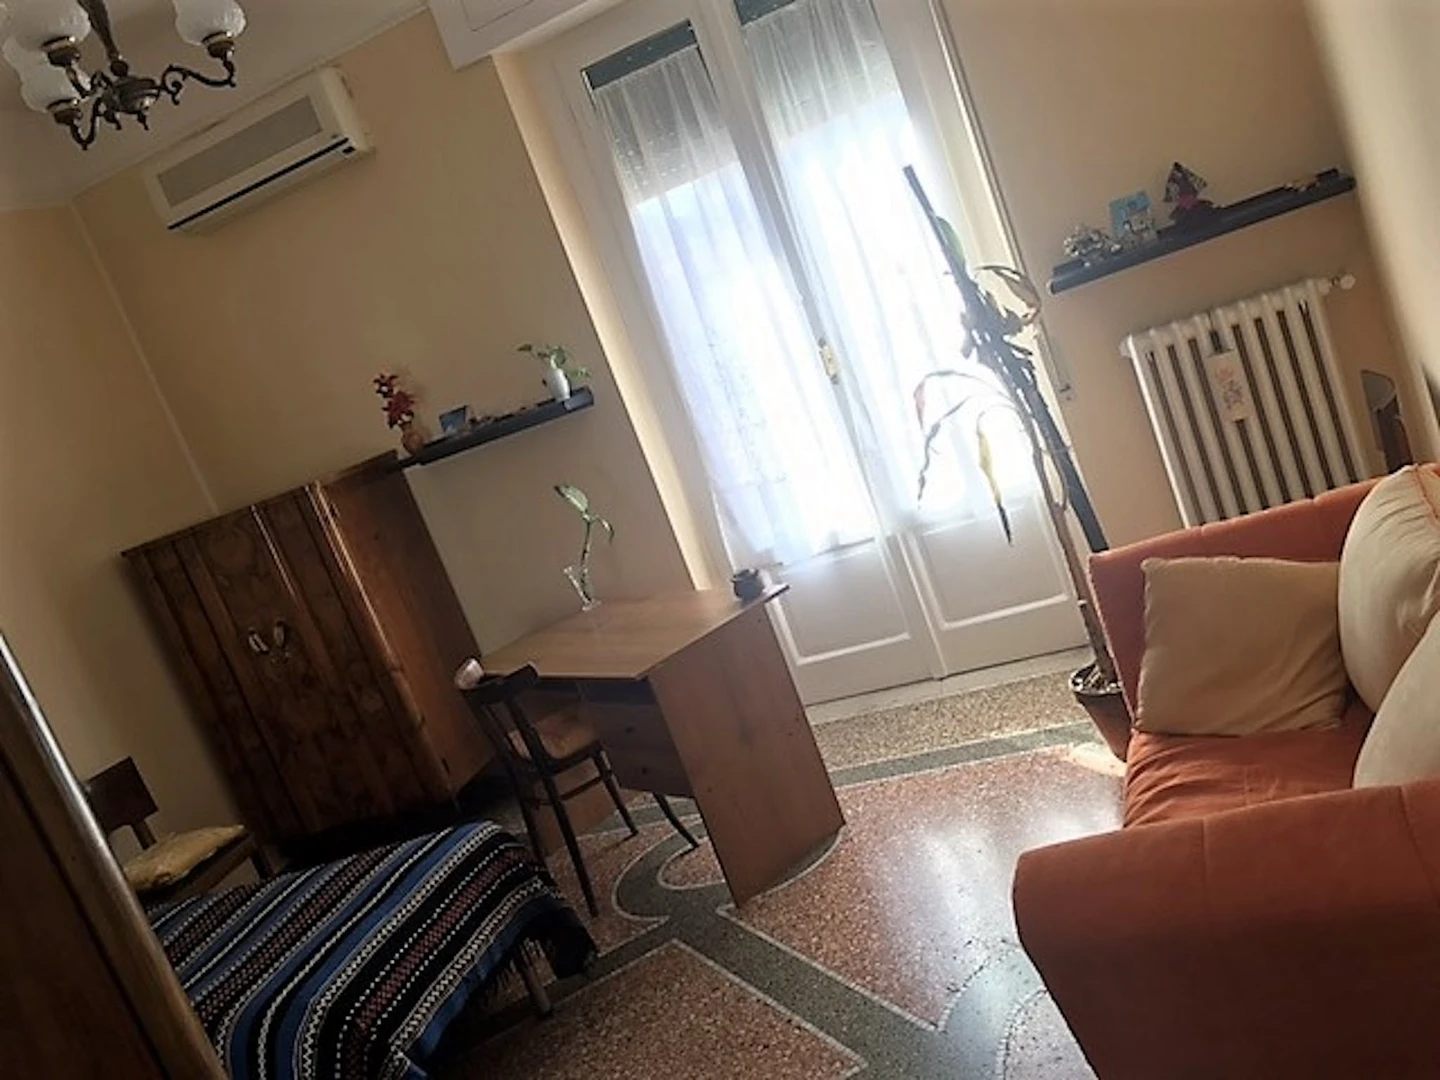 Foggia içinde 3 yatak odalı konaklama